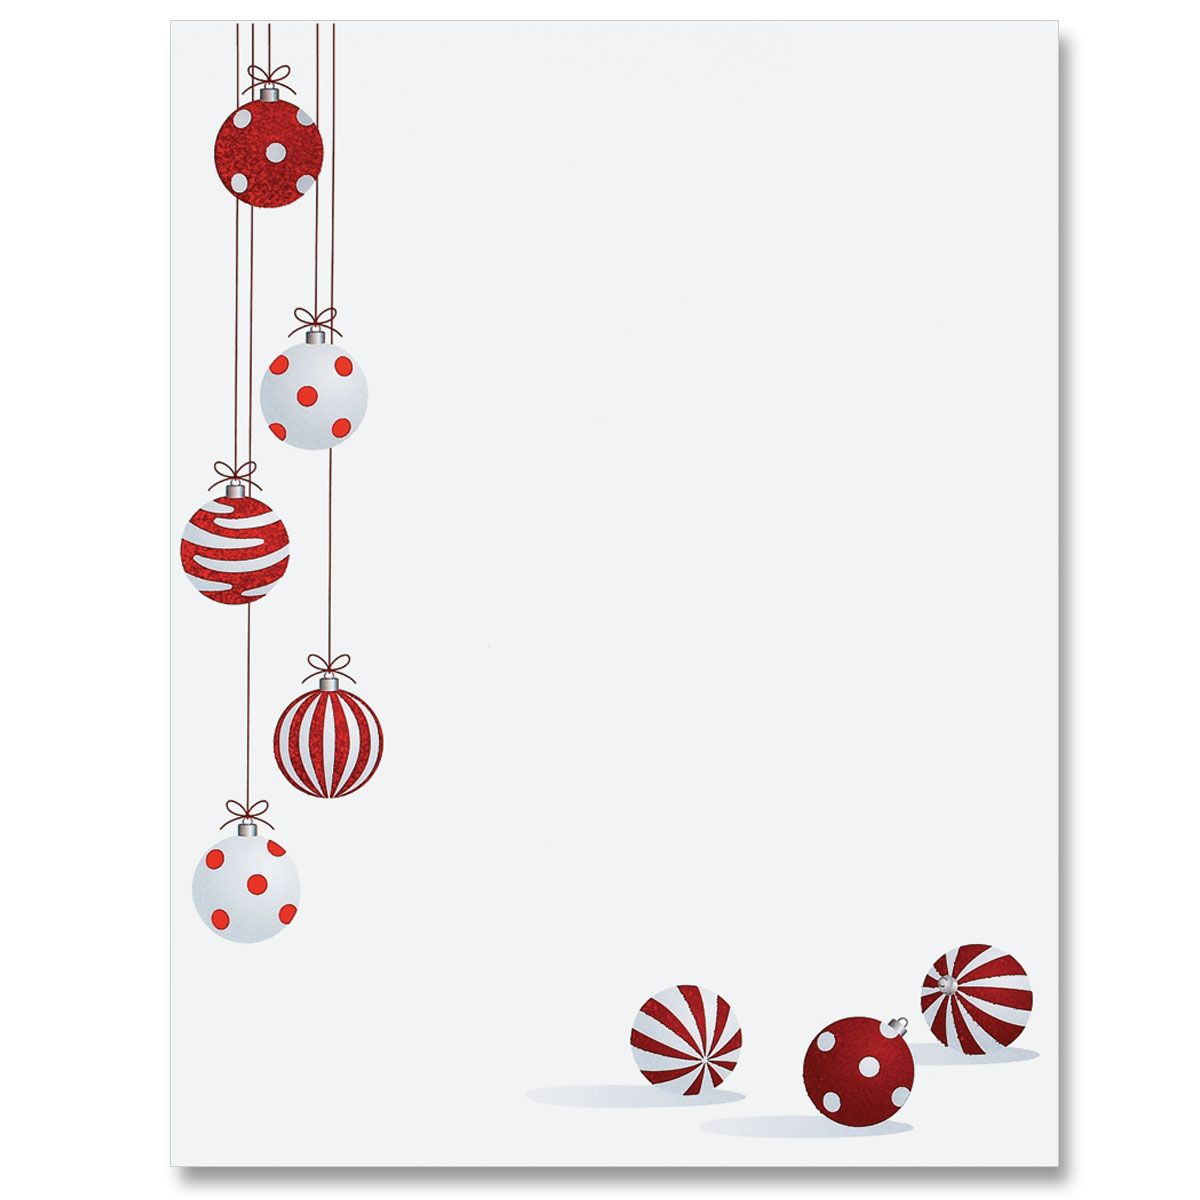 Printable Christmas Borders For Flyers_20937